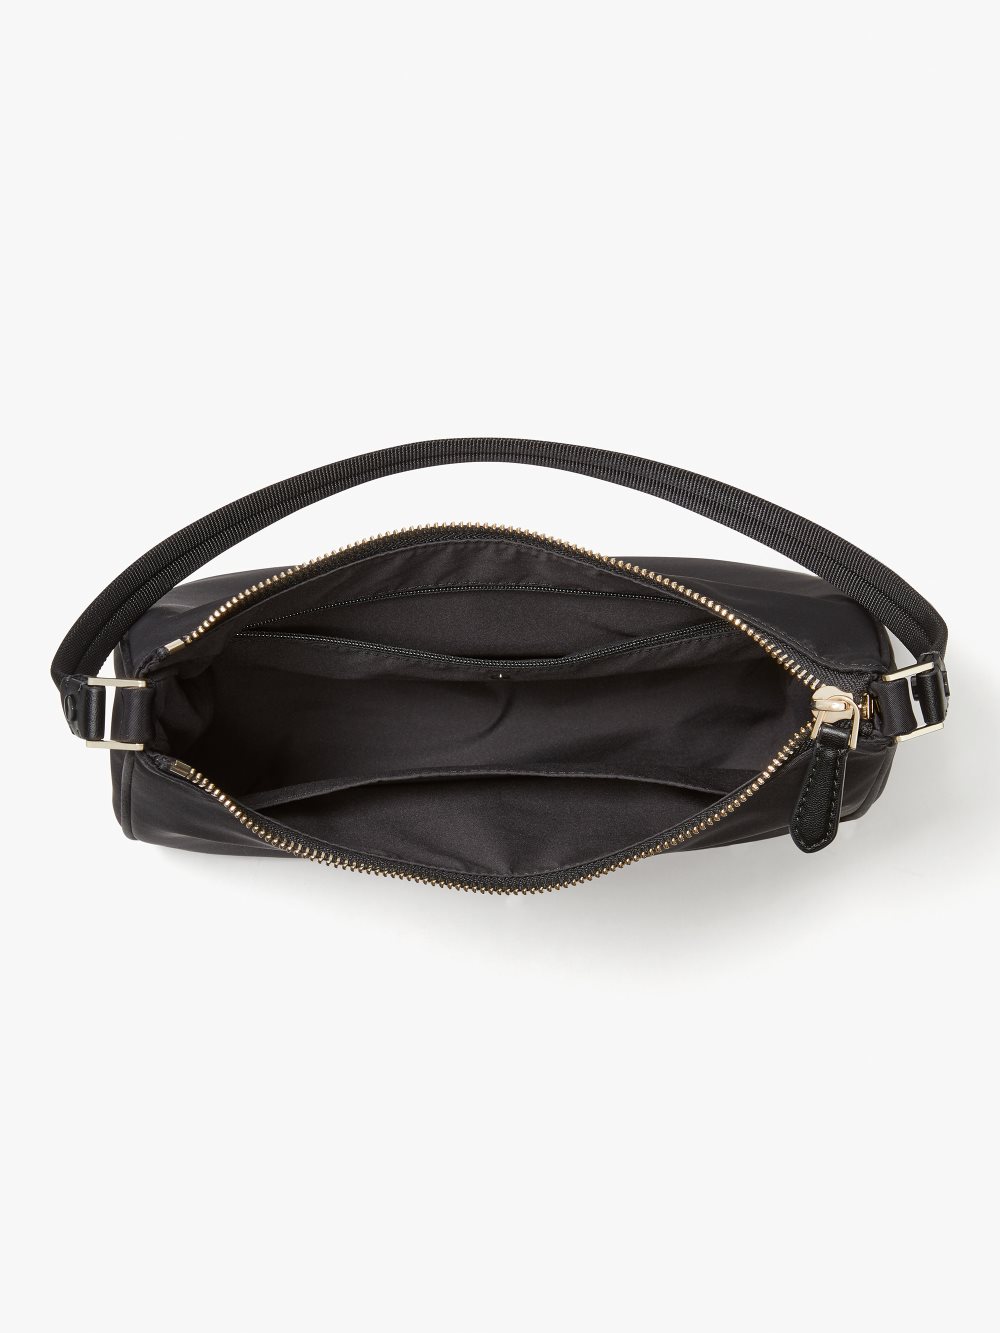 Women's black the little better sam nylon small shoulder bag | Kate Spade